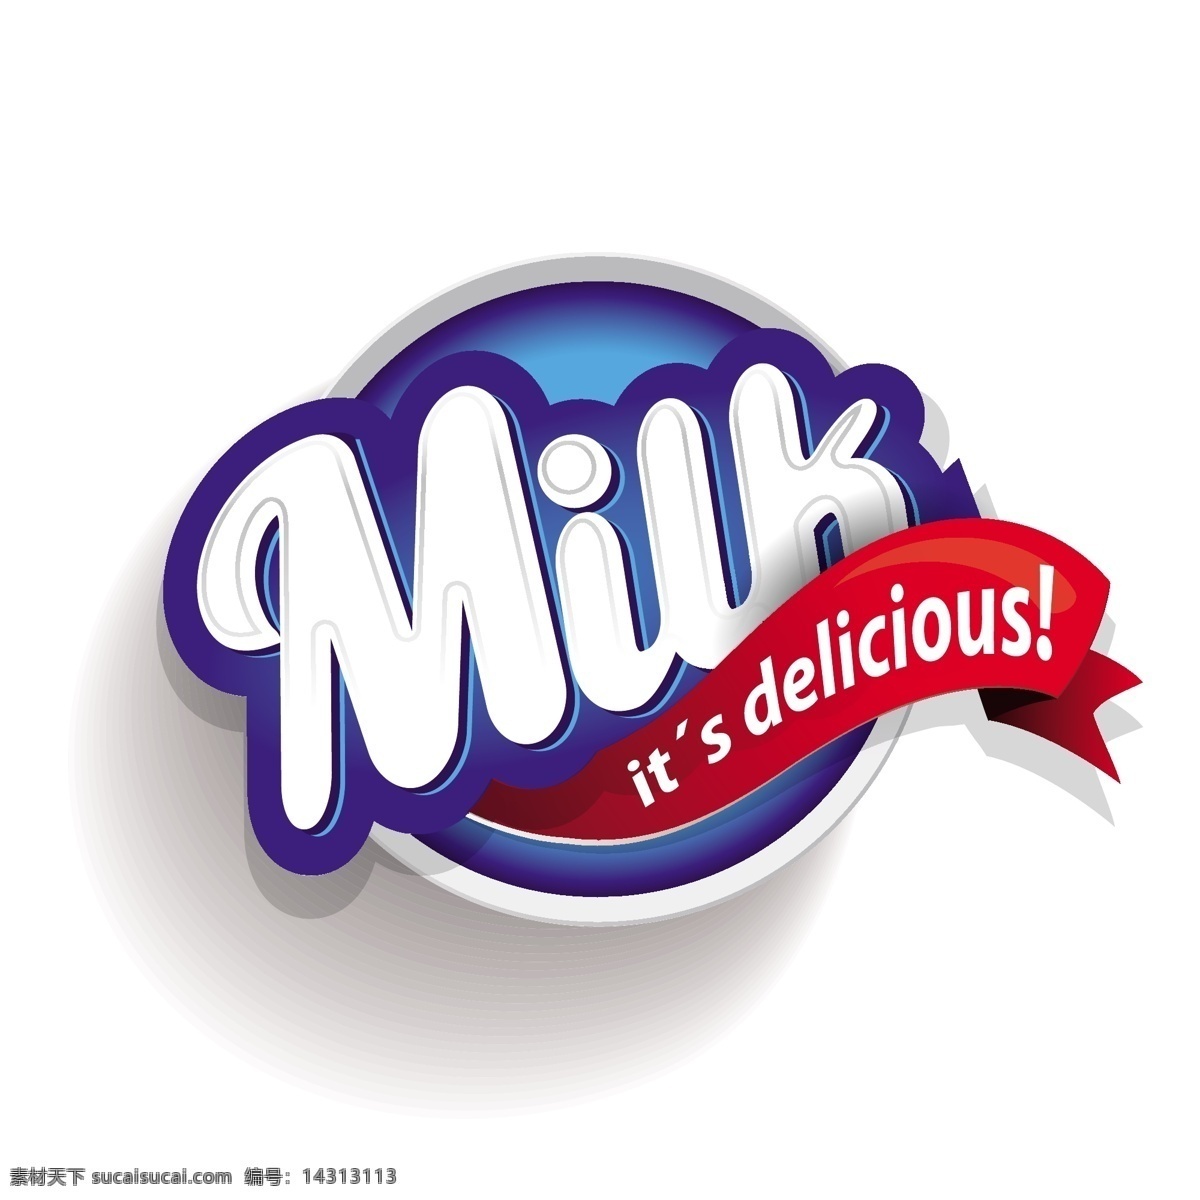 牛奶标志 牛奶 牛奶设计 牛奶图标 牛奶标签 牛奶商标 牛奶logo 抽象设计 牛奶广告 卡通背景 矢量设计 卡通设计 艺术设计 标志图标 标识标志图标 矢量